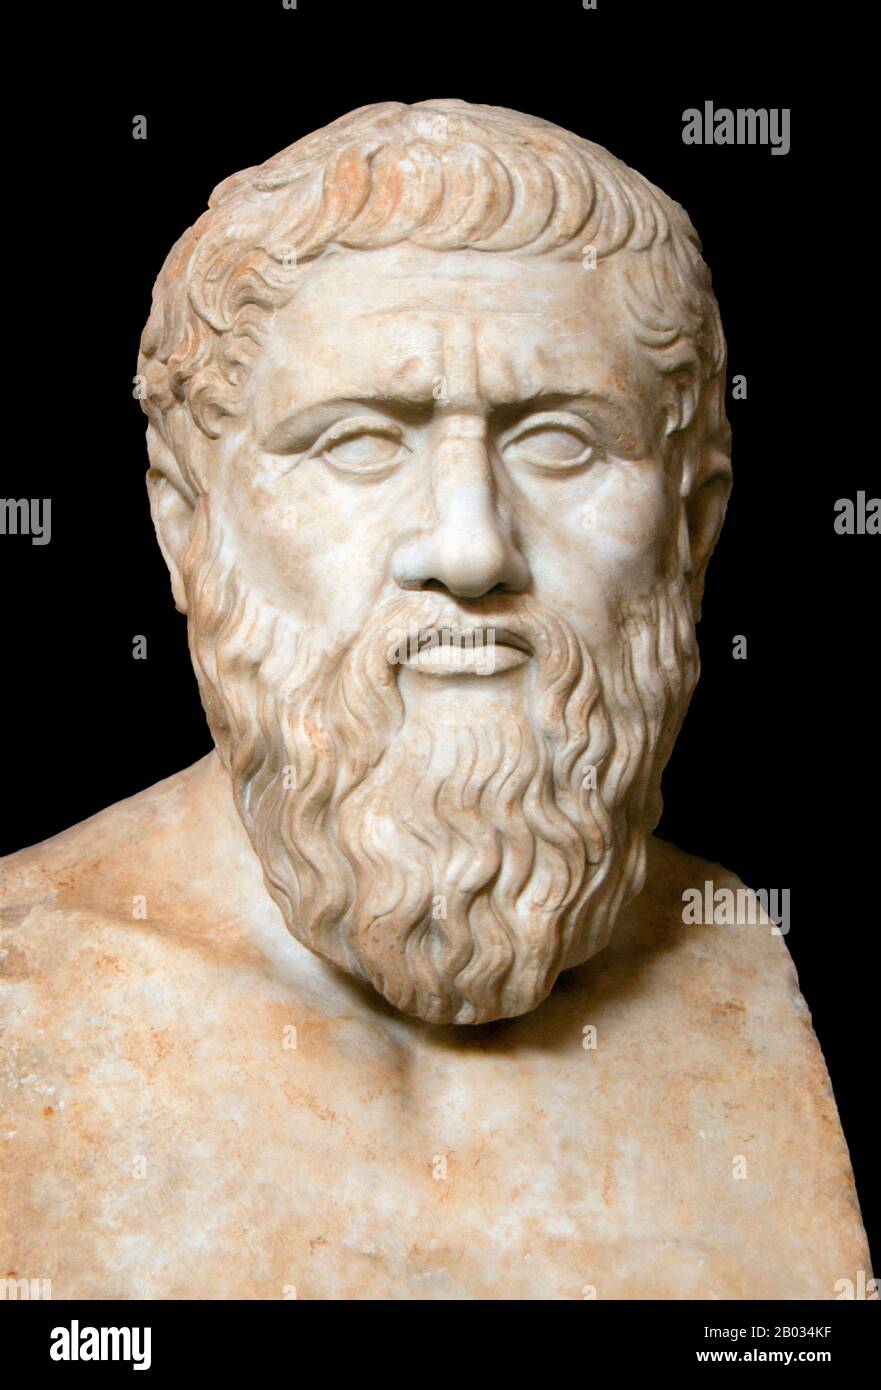 Platon (428/427 oder 424/423 - 348/347 v. u. z.) war ein Philosoph im Klassischen Griechenland und der Gründer der Akademie in Athen, der ersten Einrichtung höheren Lernens in der westlichen Welt. Er gilt weithin als die wichtigste Persönlichkeit in der Entwicklung der Philosophie, insbesondere der westlichen Tradition. Im Gegensatz zu fast allen seinen philosophischen Altersgenossen wird angenommen, dass Platons gesamter Oeuvre über 2.400 Jahre intakt geblieben ist Stockfoto